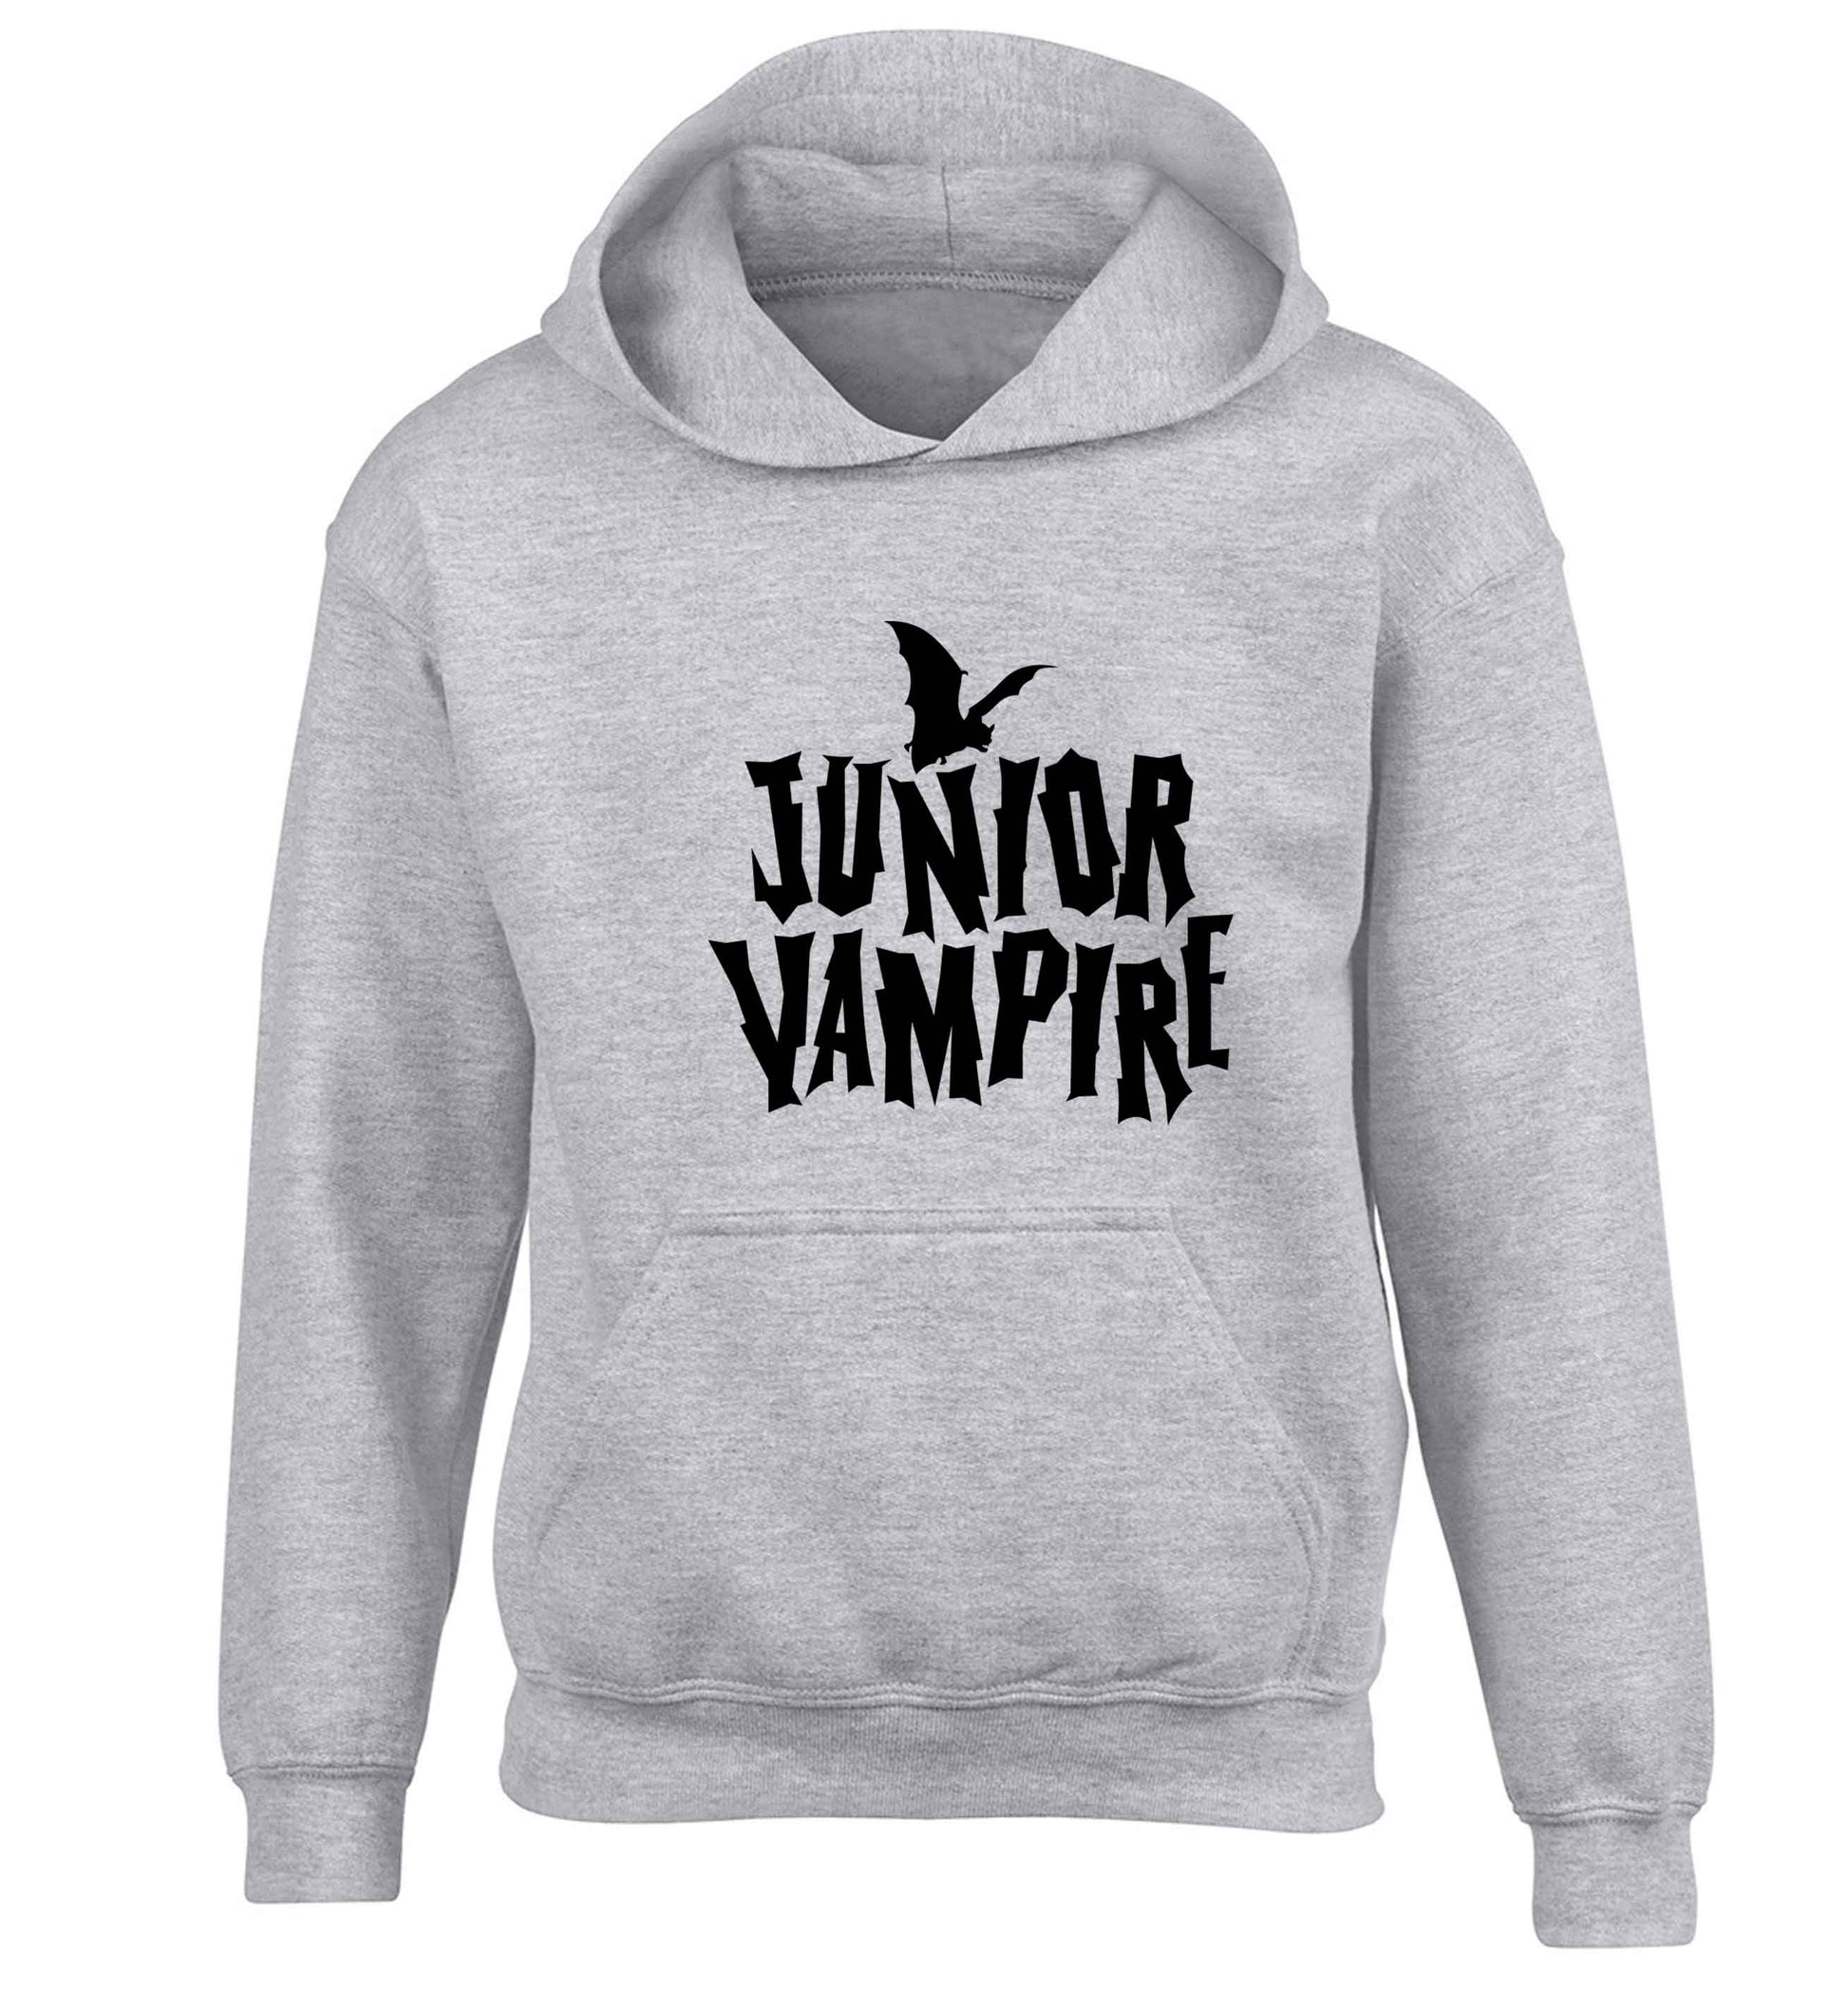 Junior vampire children's grey hoodie 12-13 Years